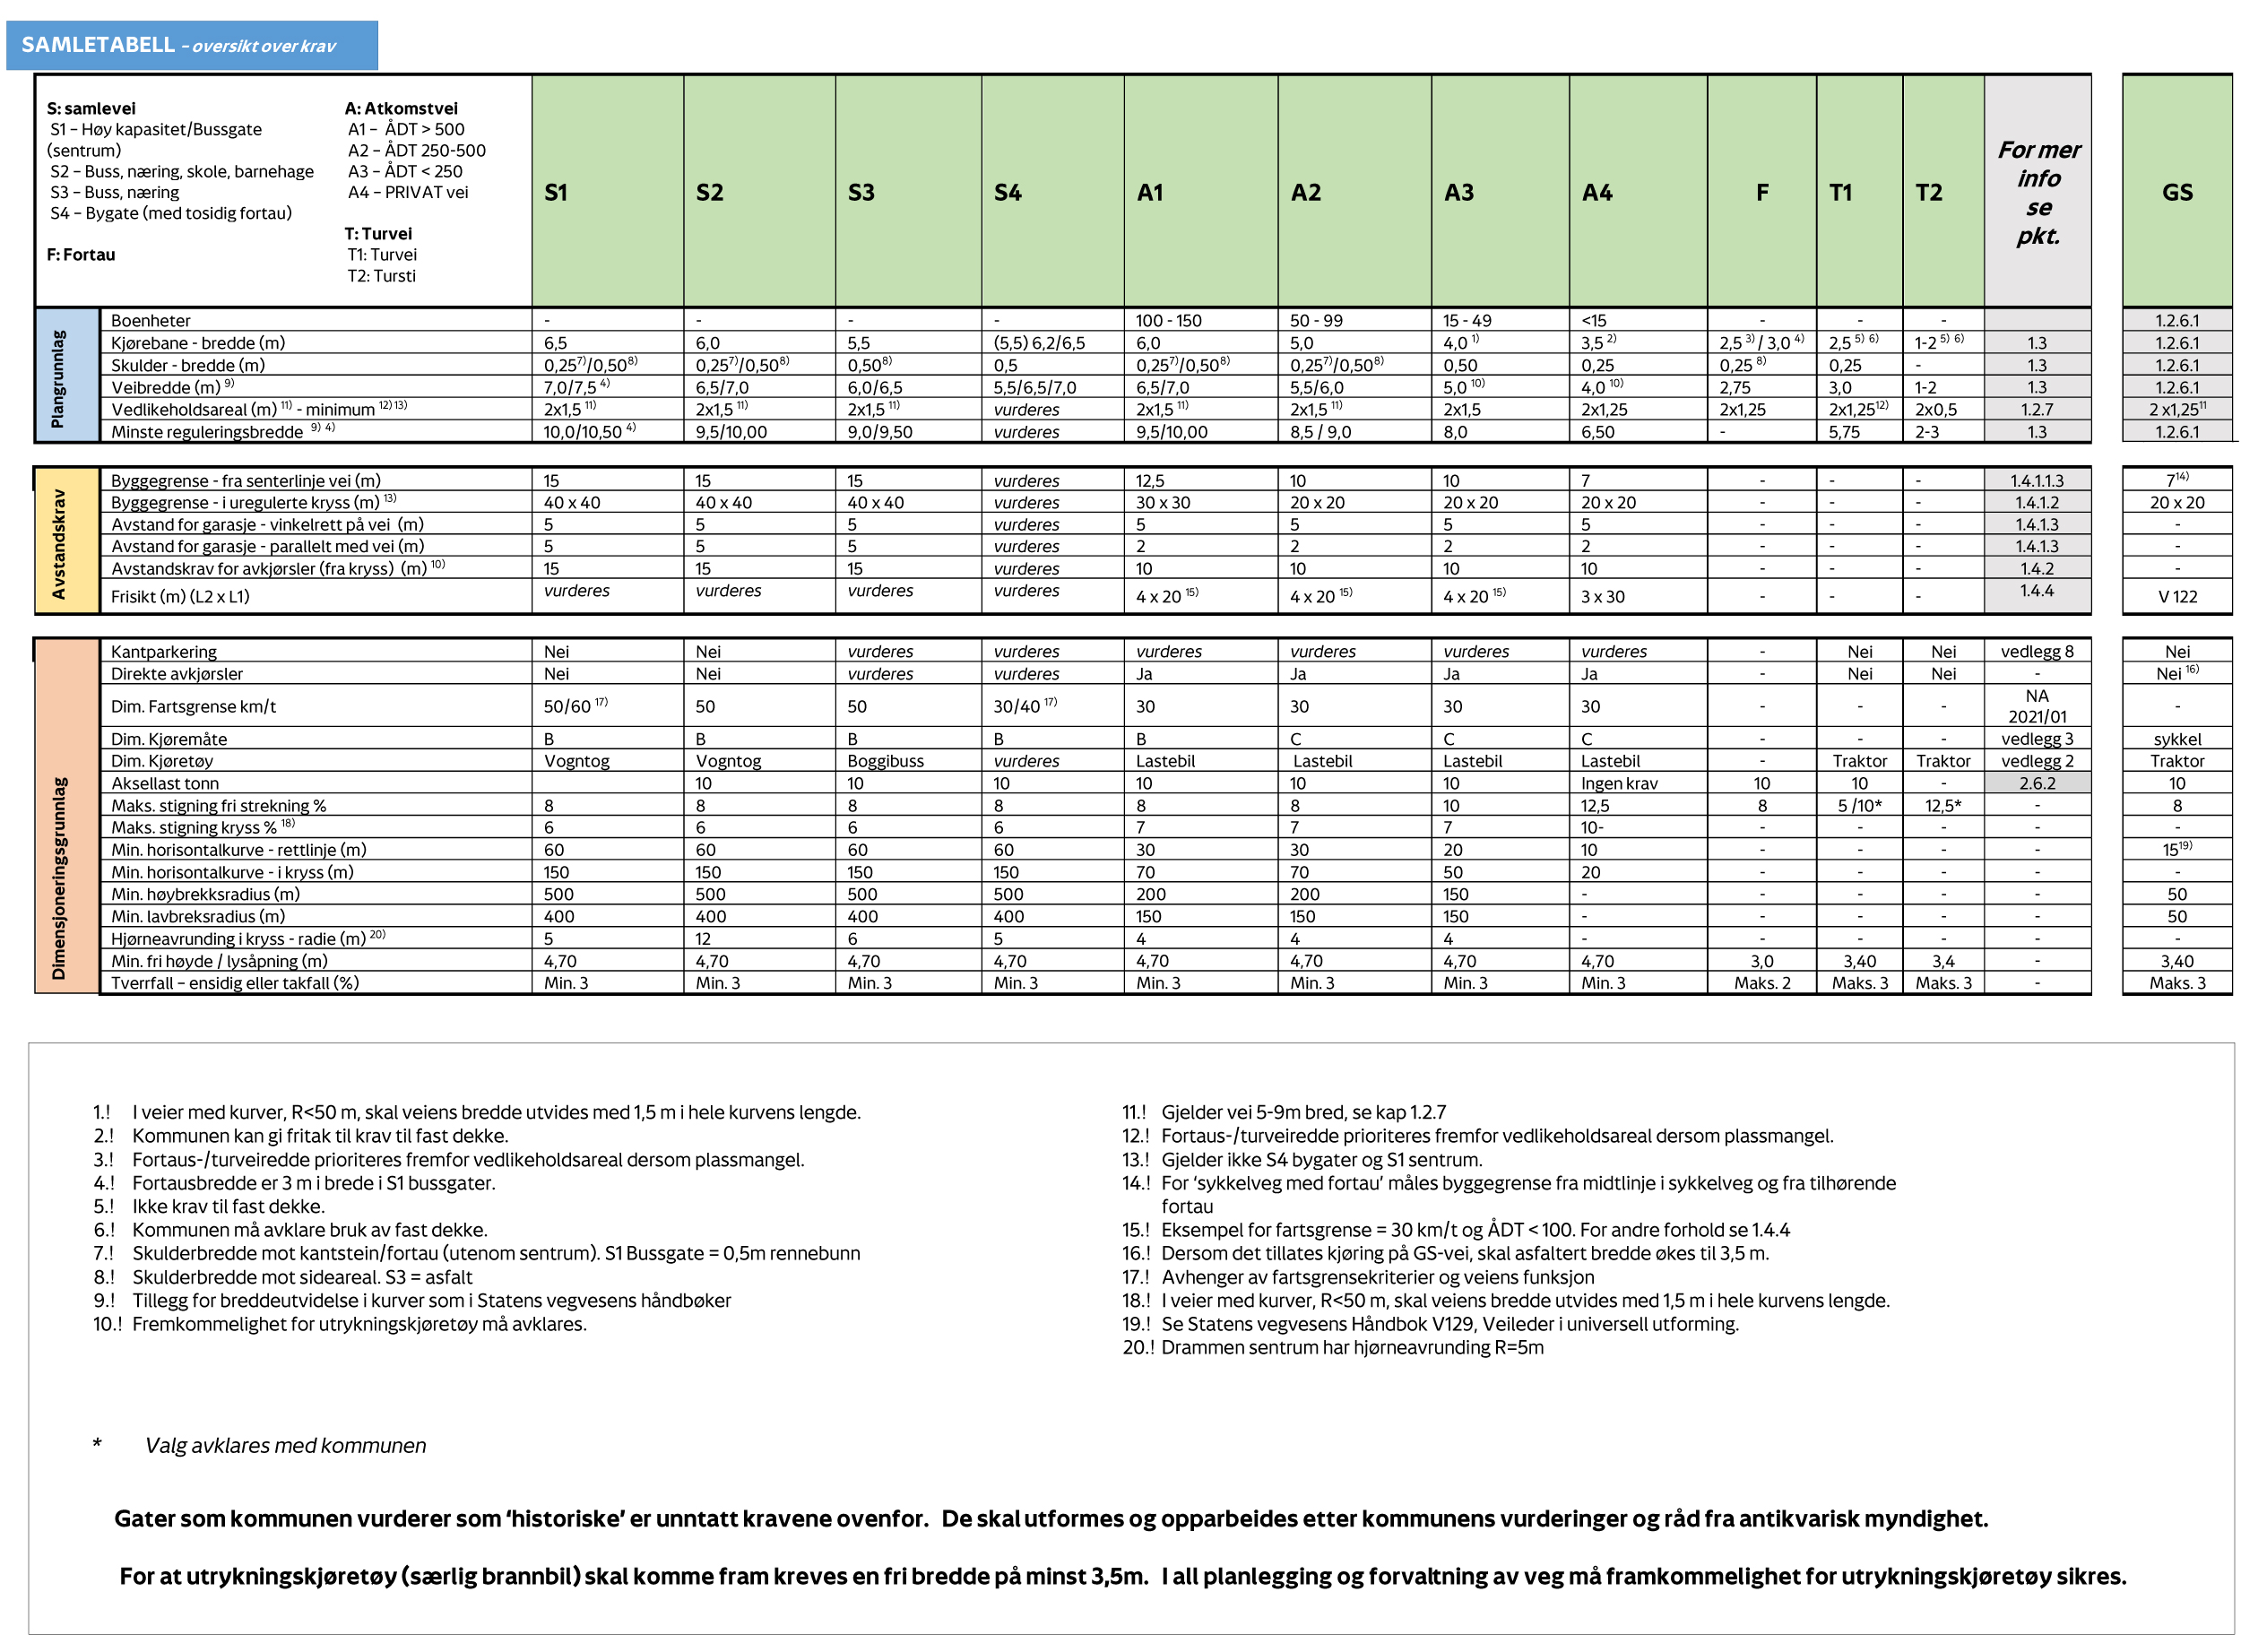 Bildet viser en tabell som oppsummerer alle vei typene i kapittel 1.2.3. 